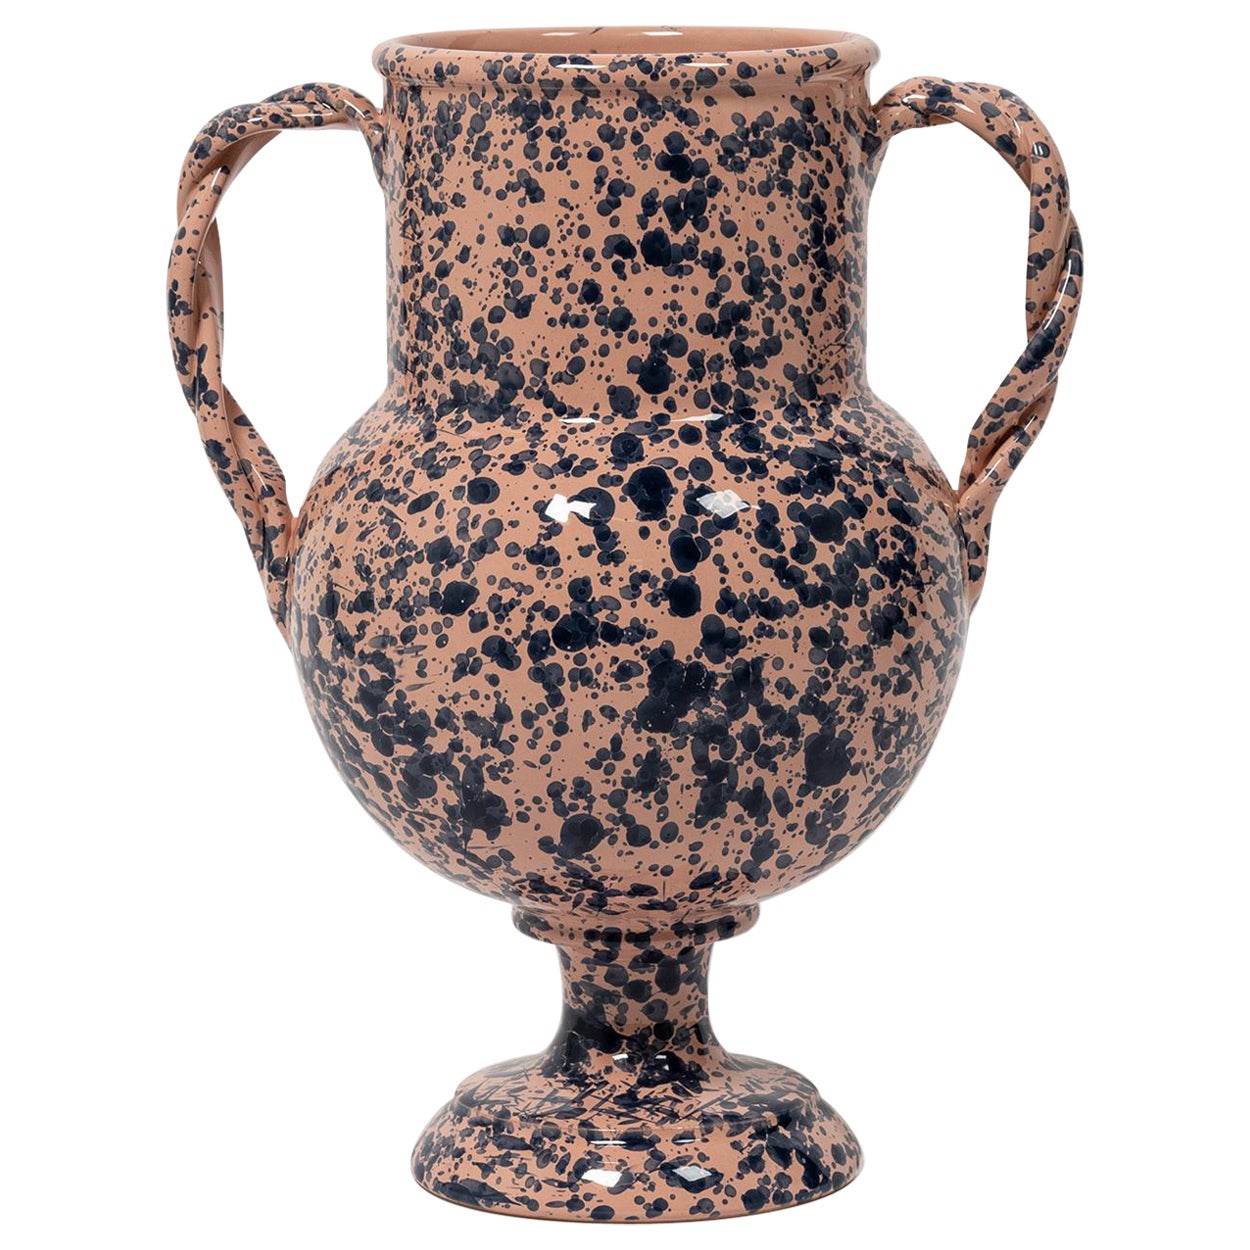 Splatter Vase, ceramic, greek urn inspired, Large, Pink and Blue